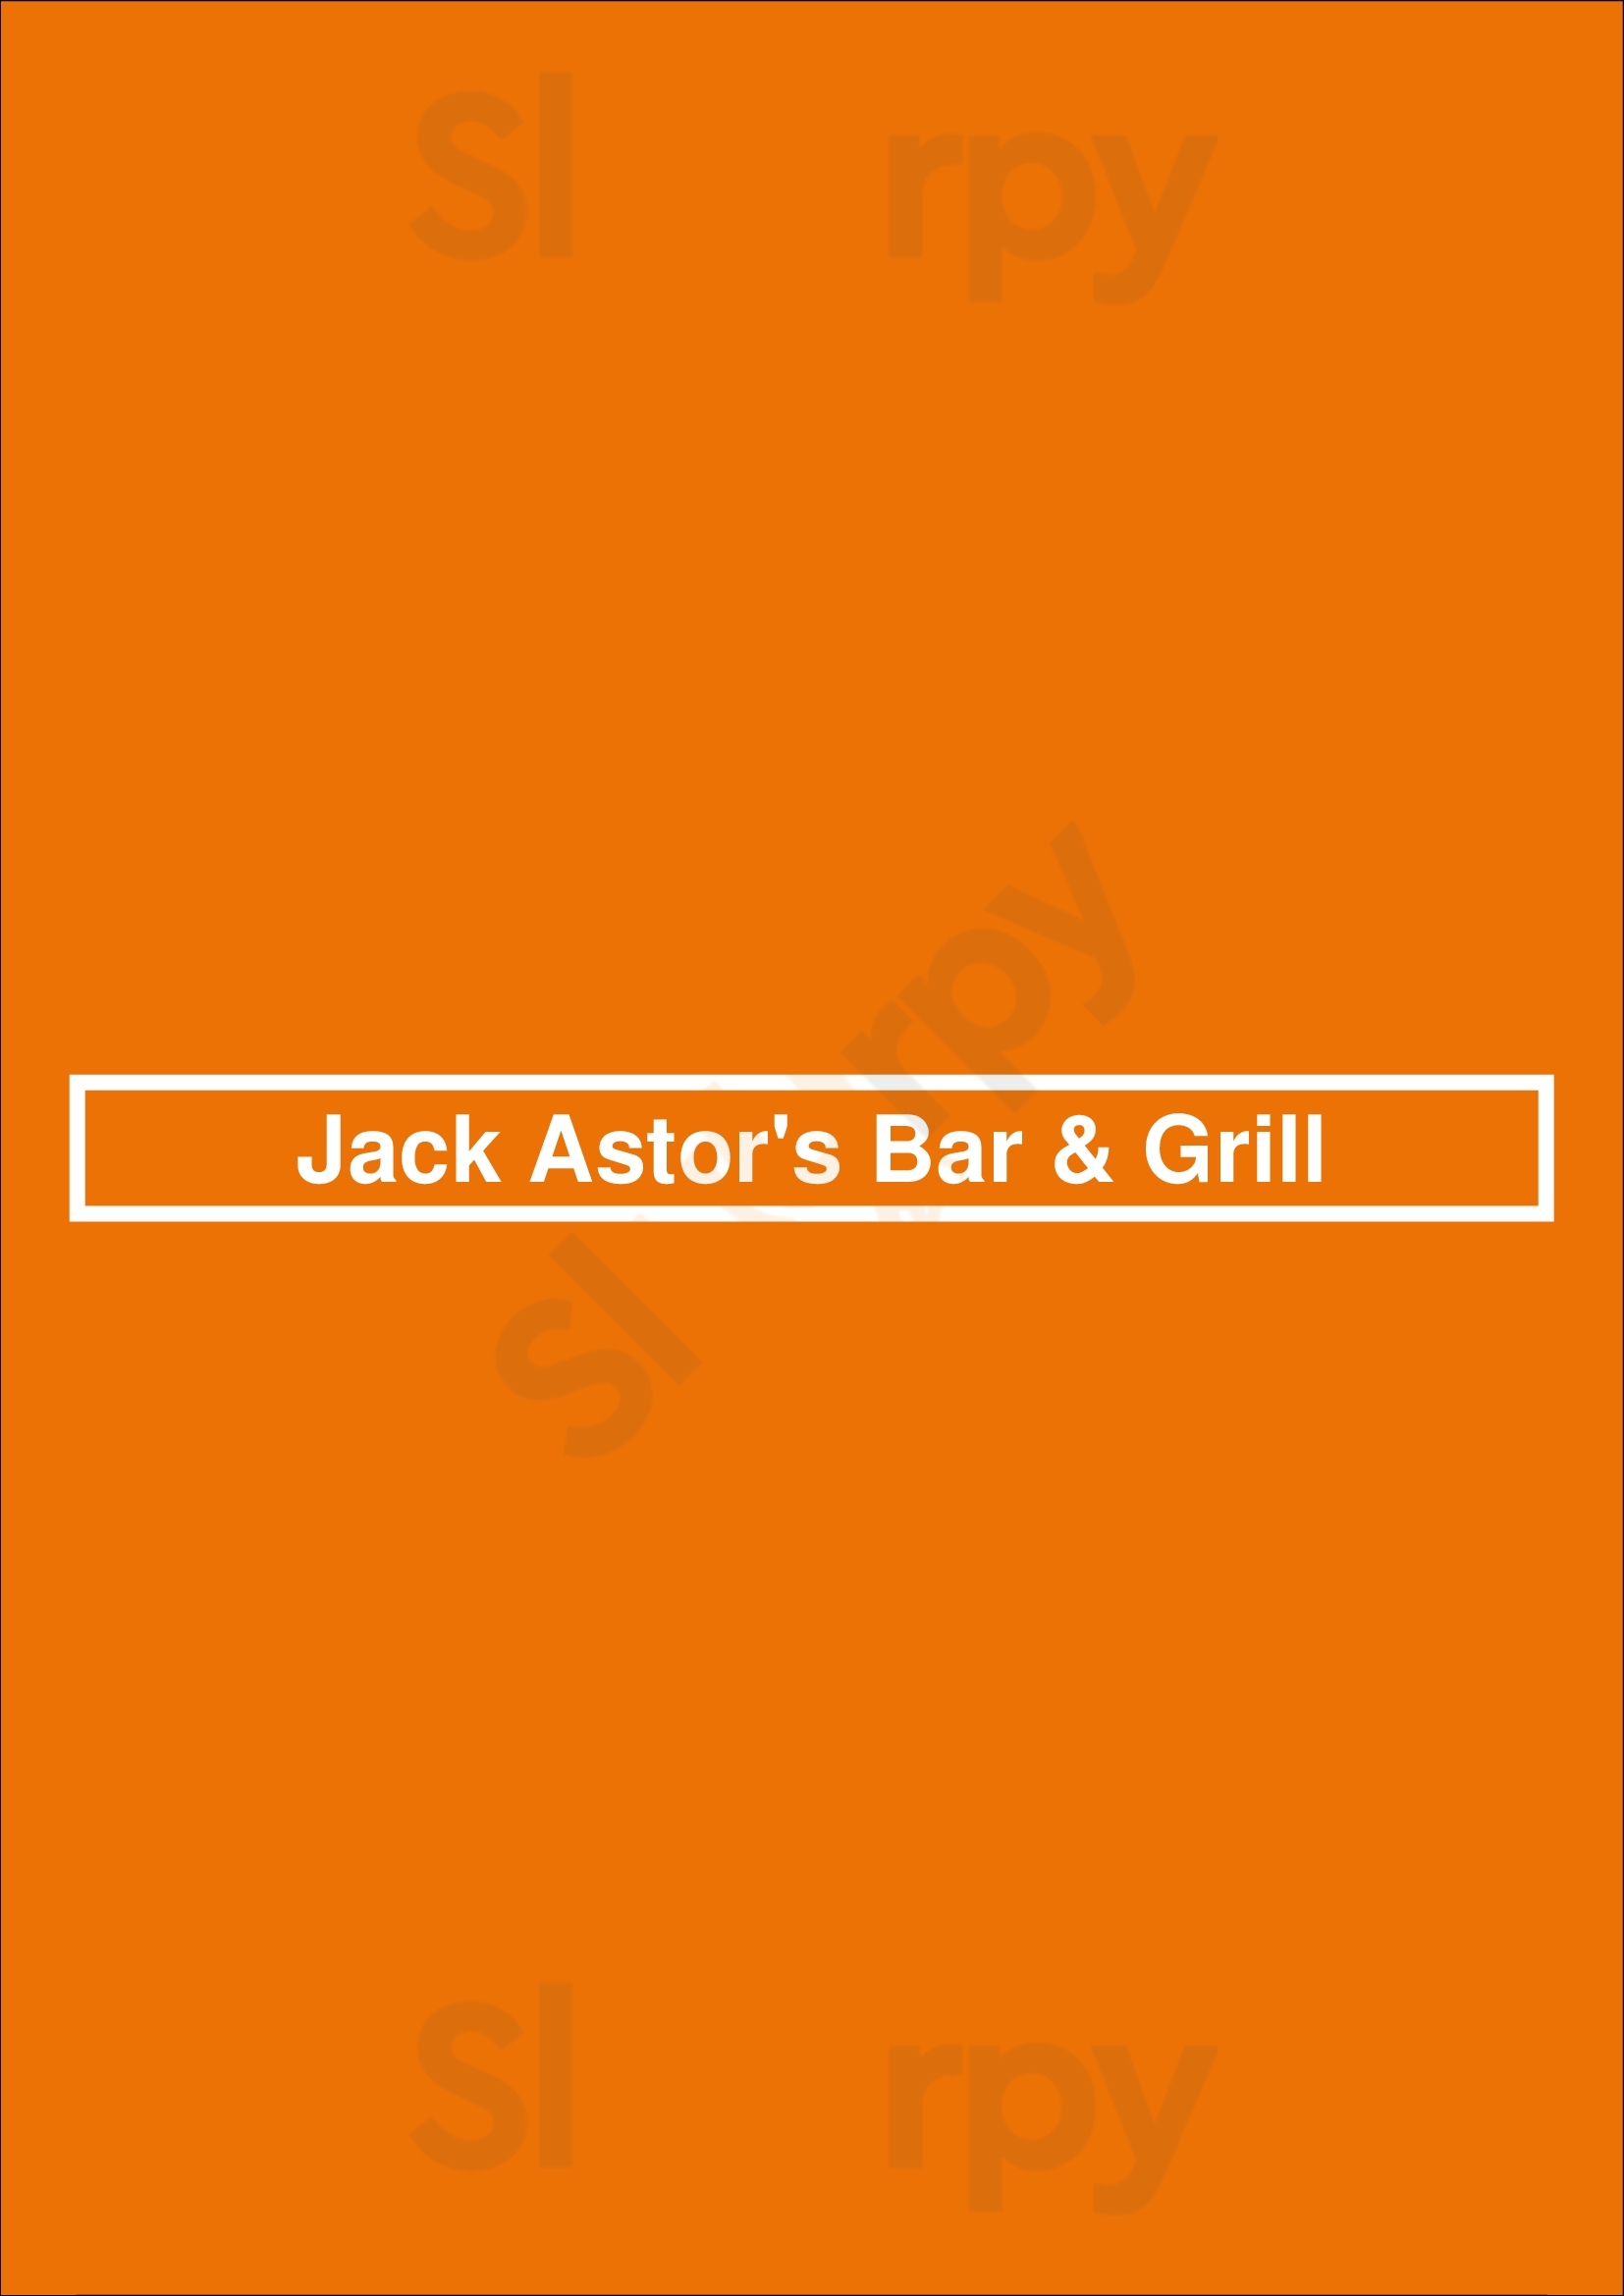 Jack Astor's Bar & Grill Hunt Club Ottawa Menu - 1